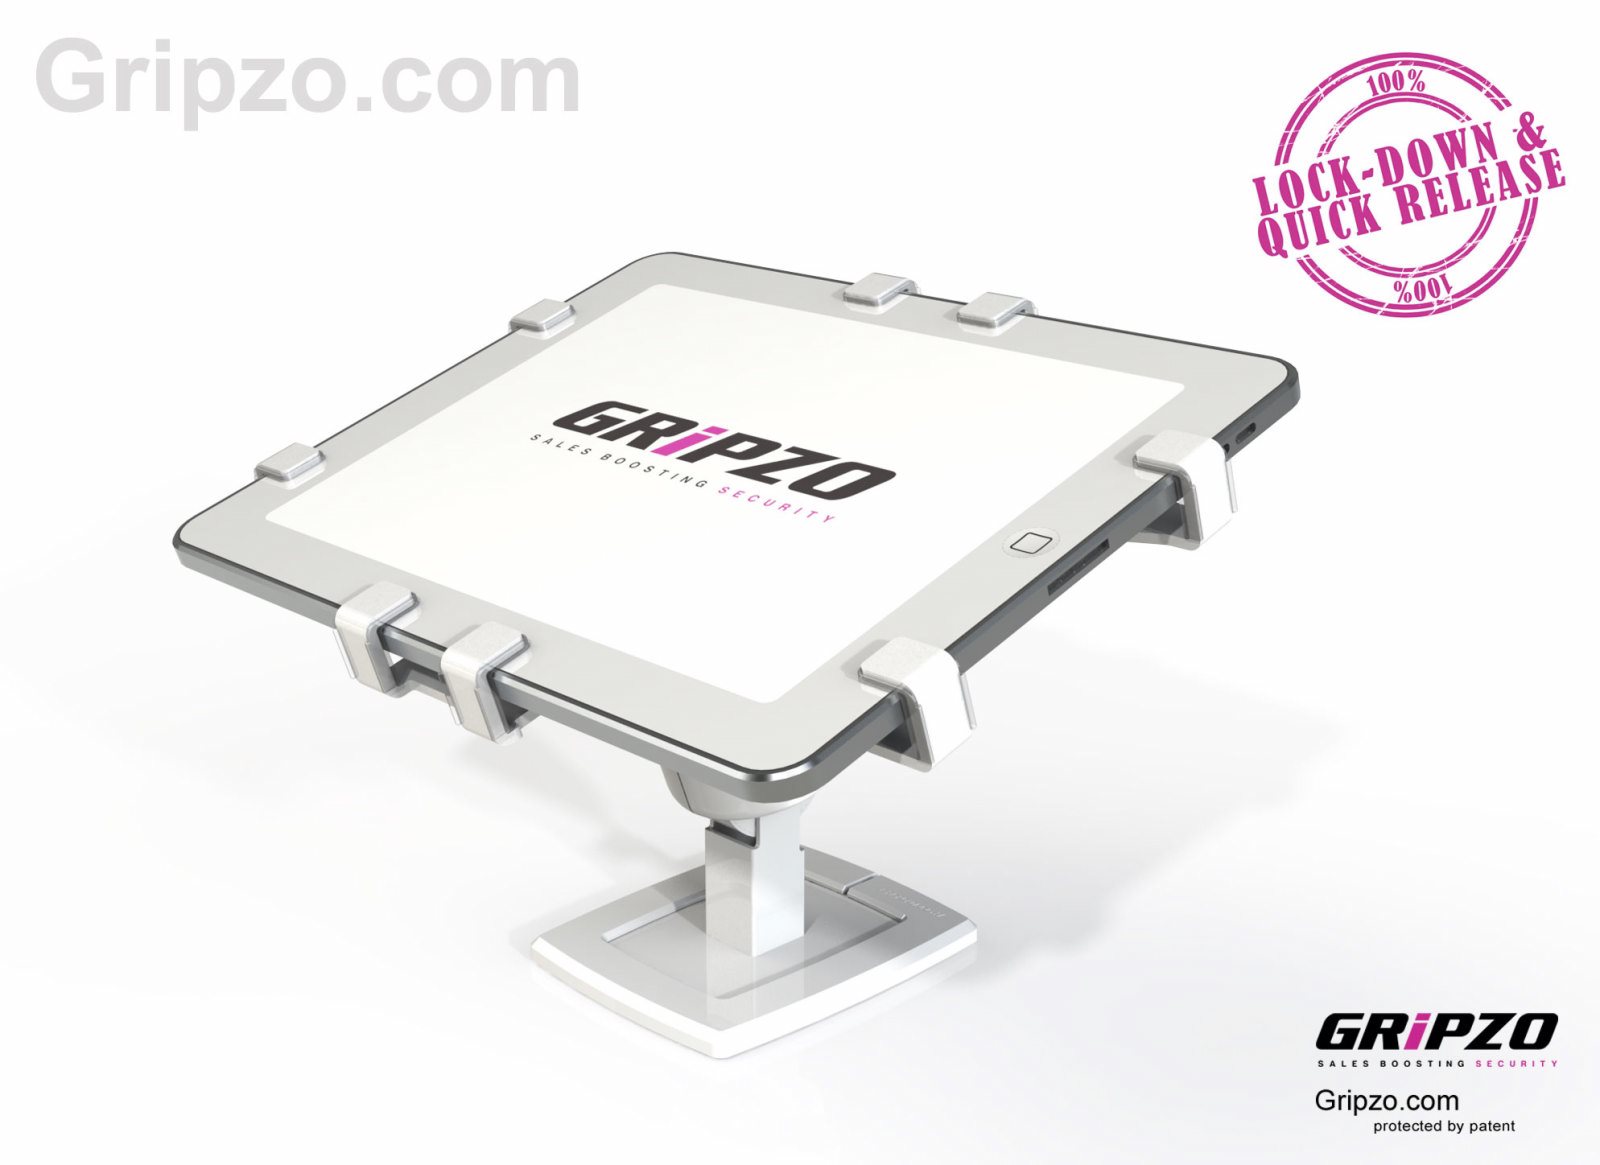 gripzo-allwhite-1-met-logo.jpg